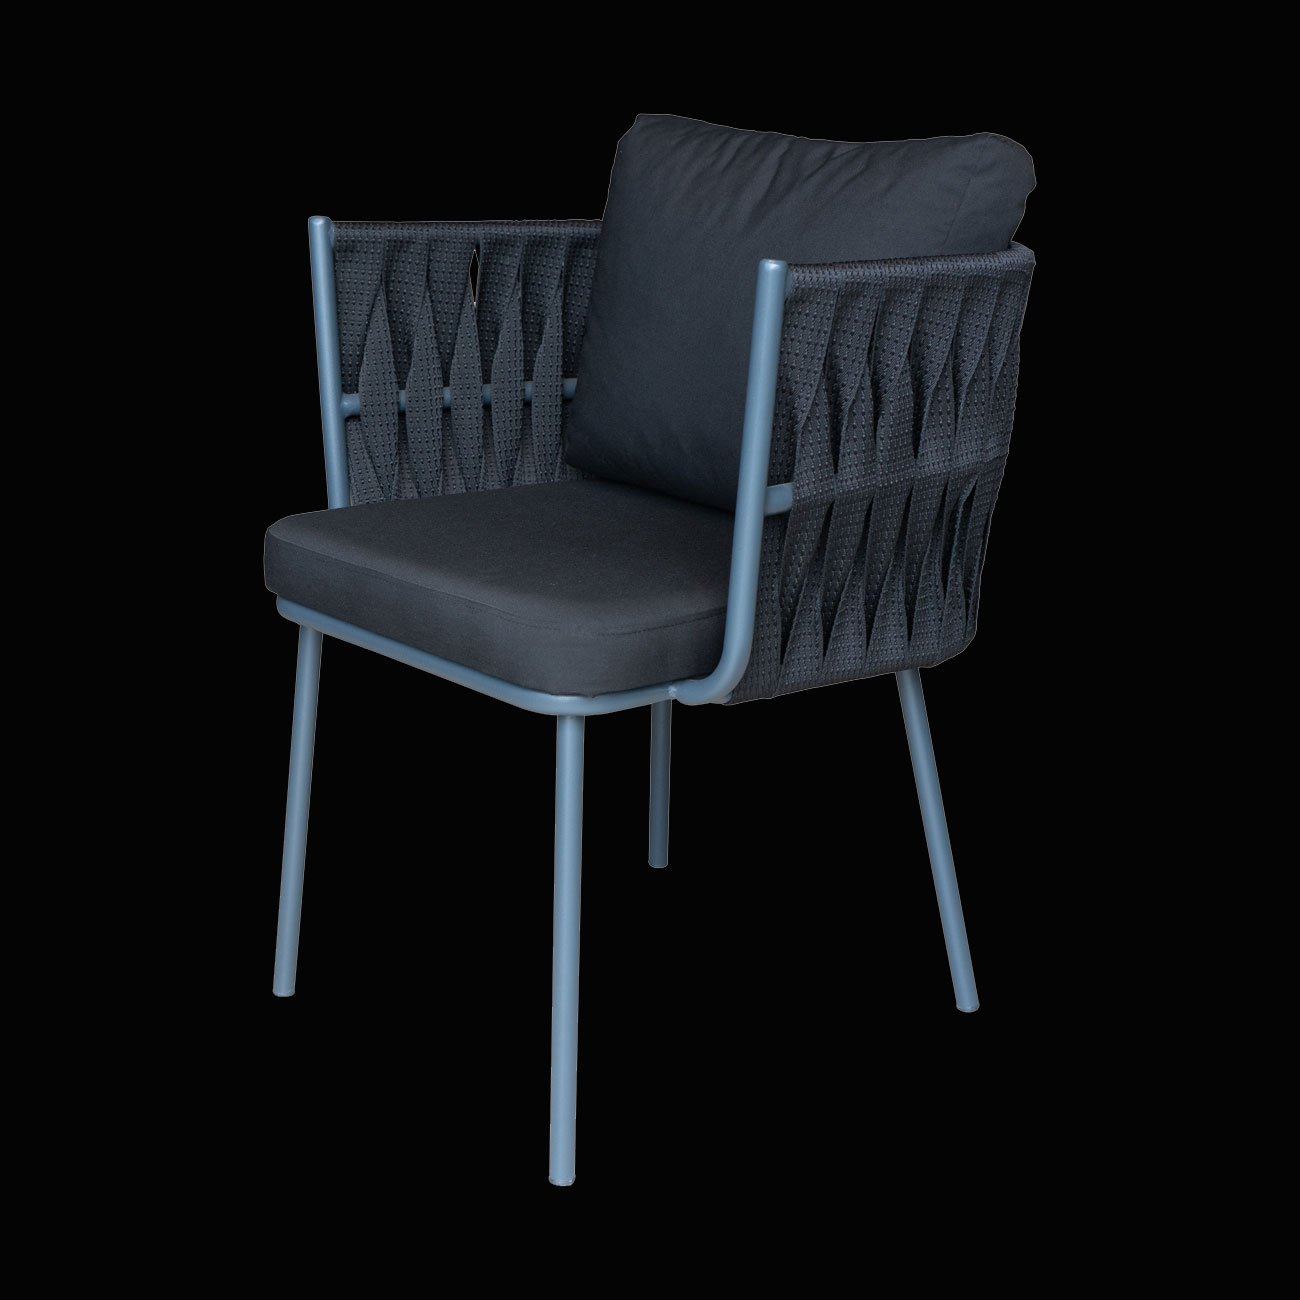 örgülü sandalye modelleri,sandalye fiyatları,sandalye tasarımları